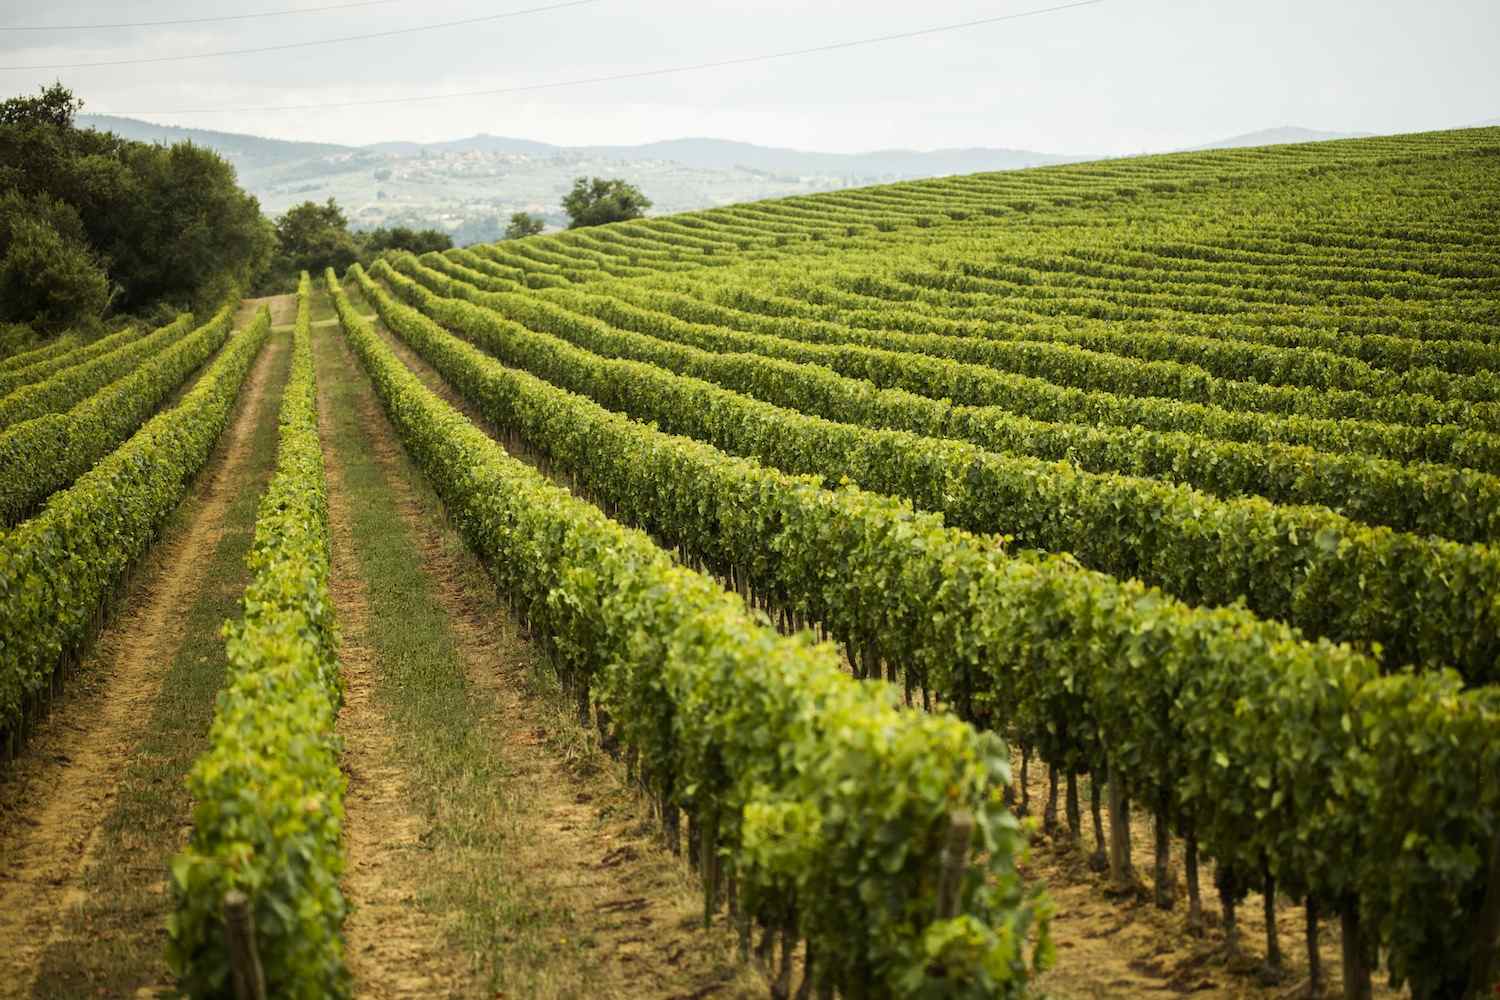 La Tenuta Sette Ponti si trova nel Valdarno di Sopra, in Toscana, e tra le sue etichette conta vini di pregio quali il Crognolo e l'Oreno